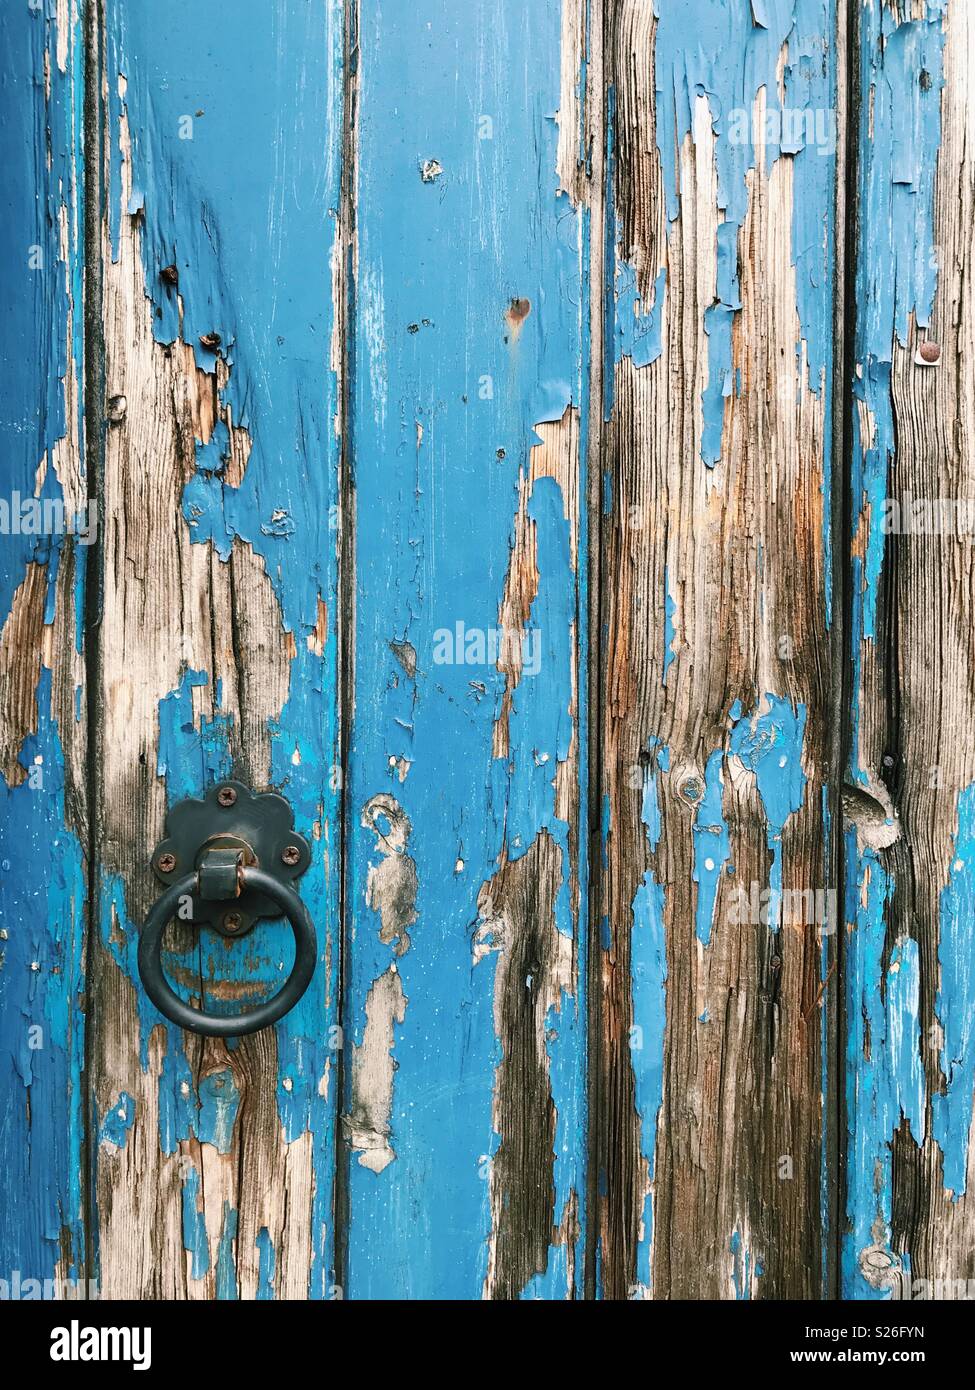 Peinture bleue écaillée sur une vieille porte en bois. Banque D'Images